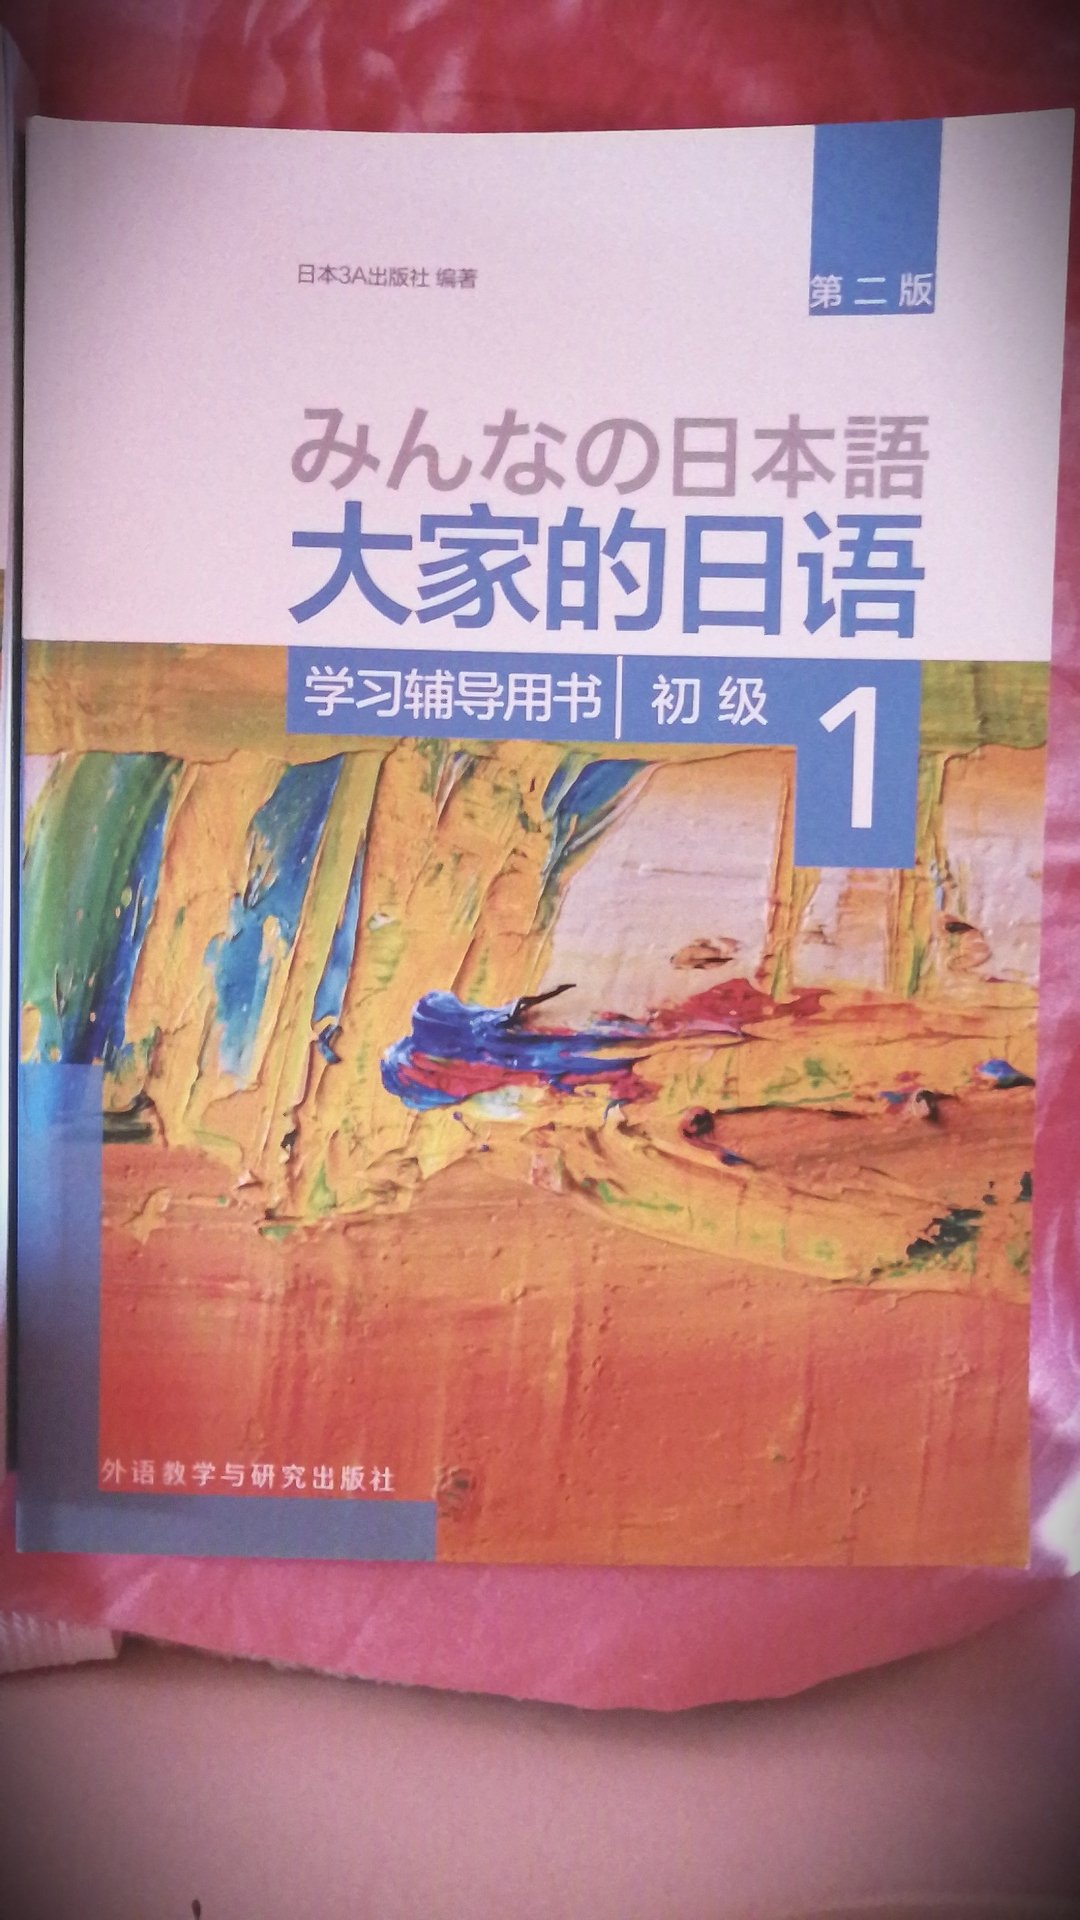 用来自学日语，家里已经买了标准~语，想换其他的教程学学看，收到的书质量很好，等有空捡起书本学习吧。